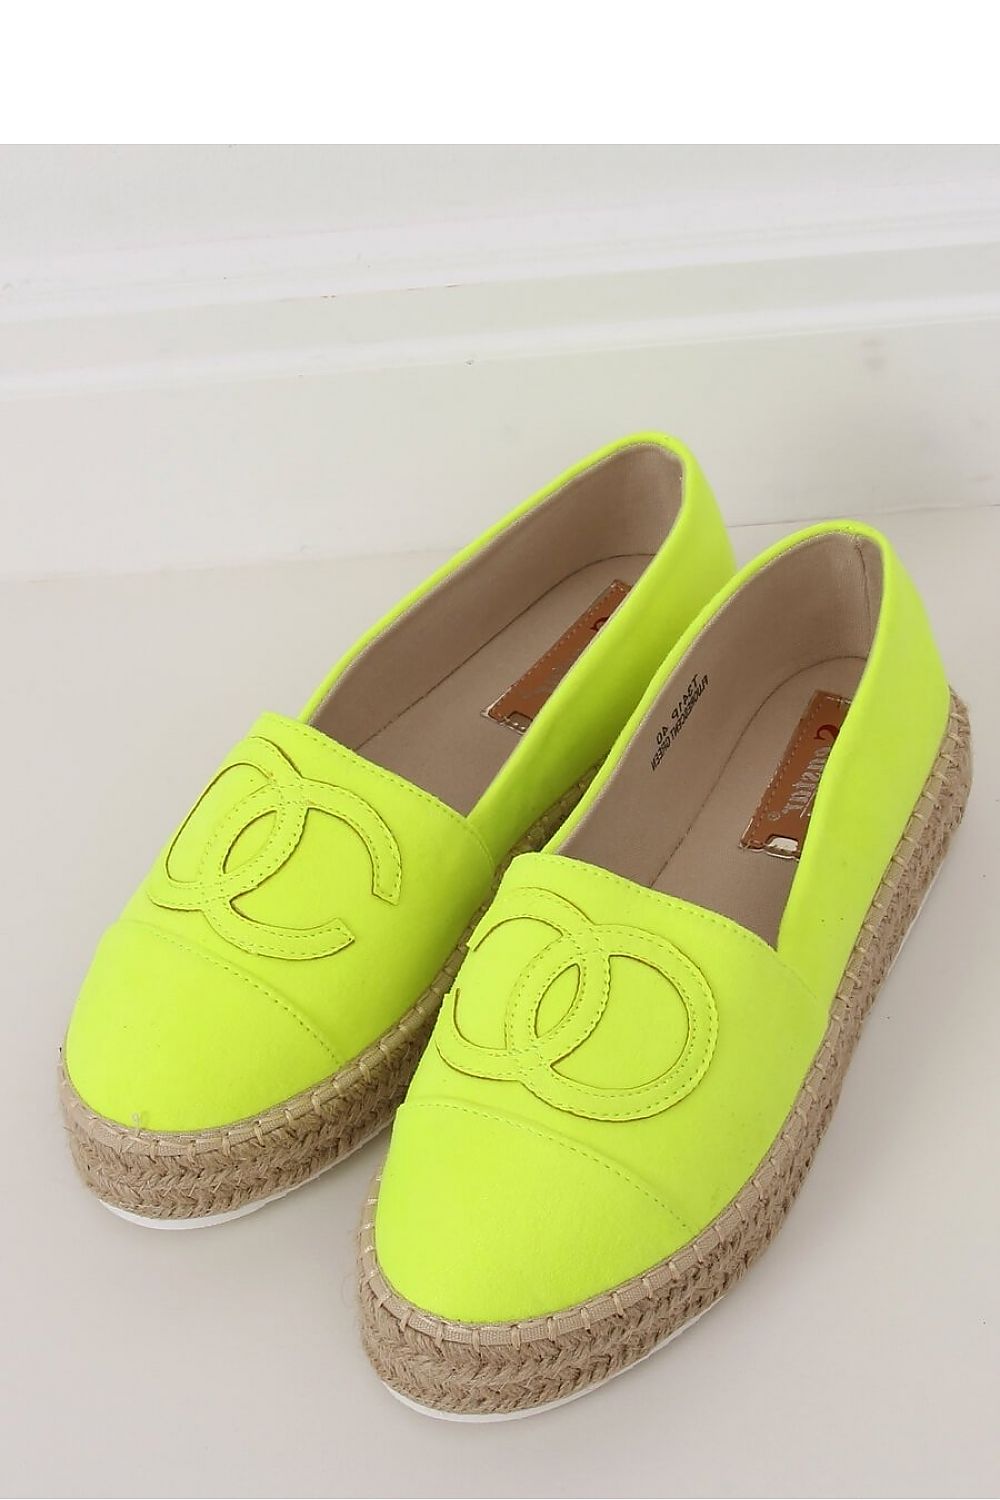 CC Neon Espadrilles Shoes